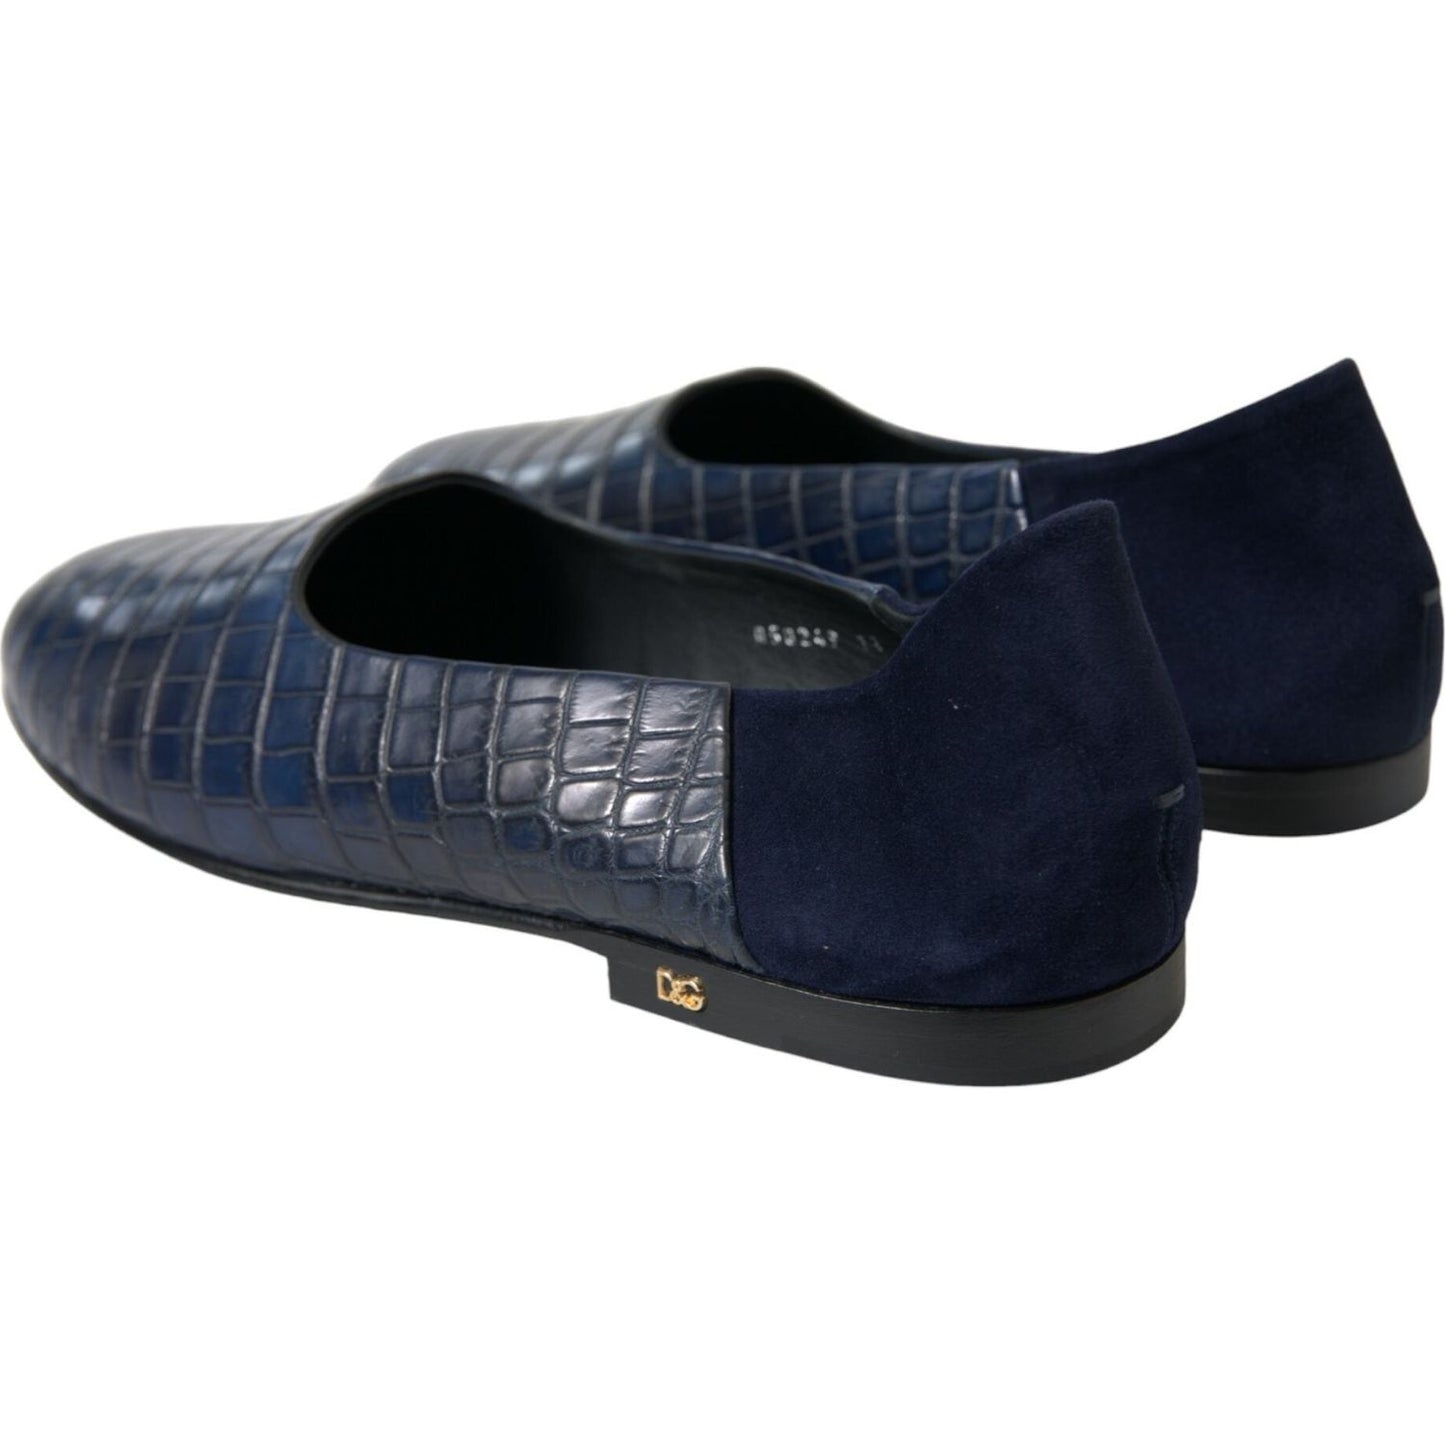 Dolce & Gabbana | Elegant Blue Crocodile Leather Loafers| McRichard Designer Brands   